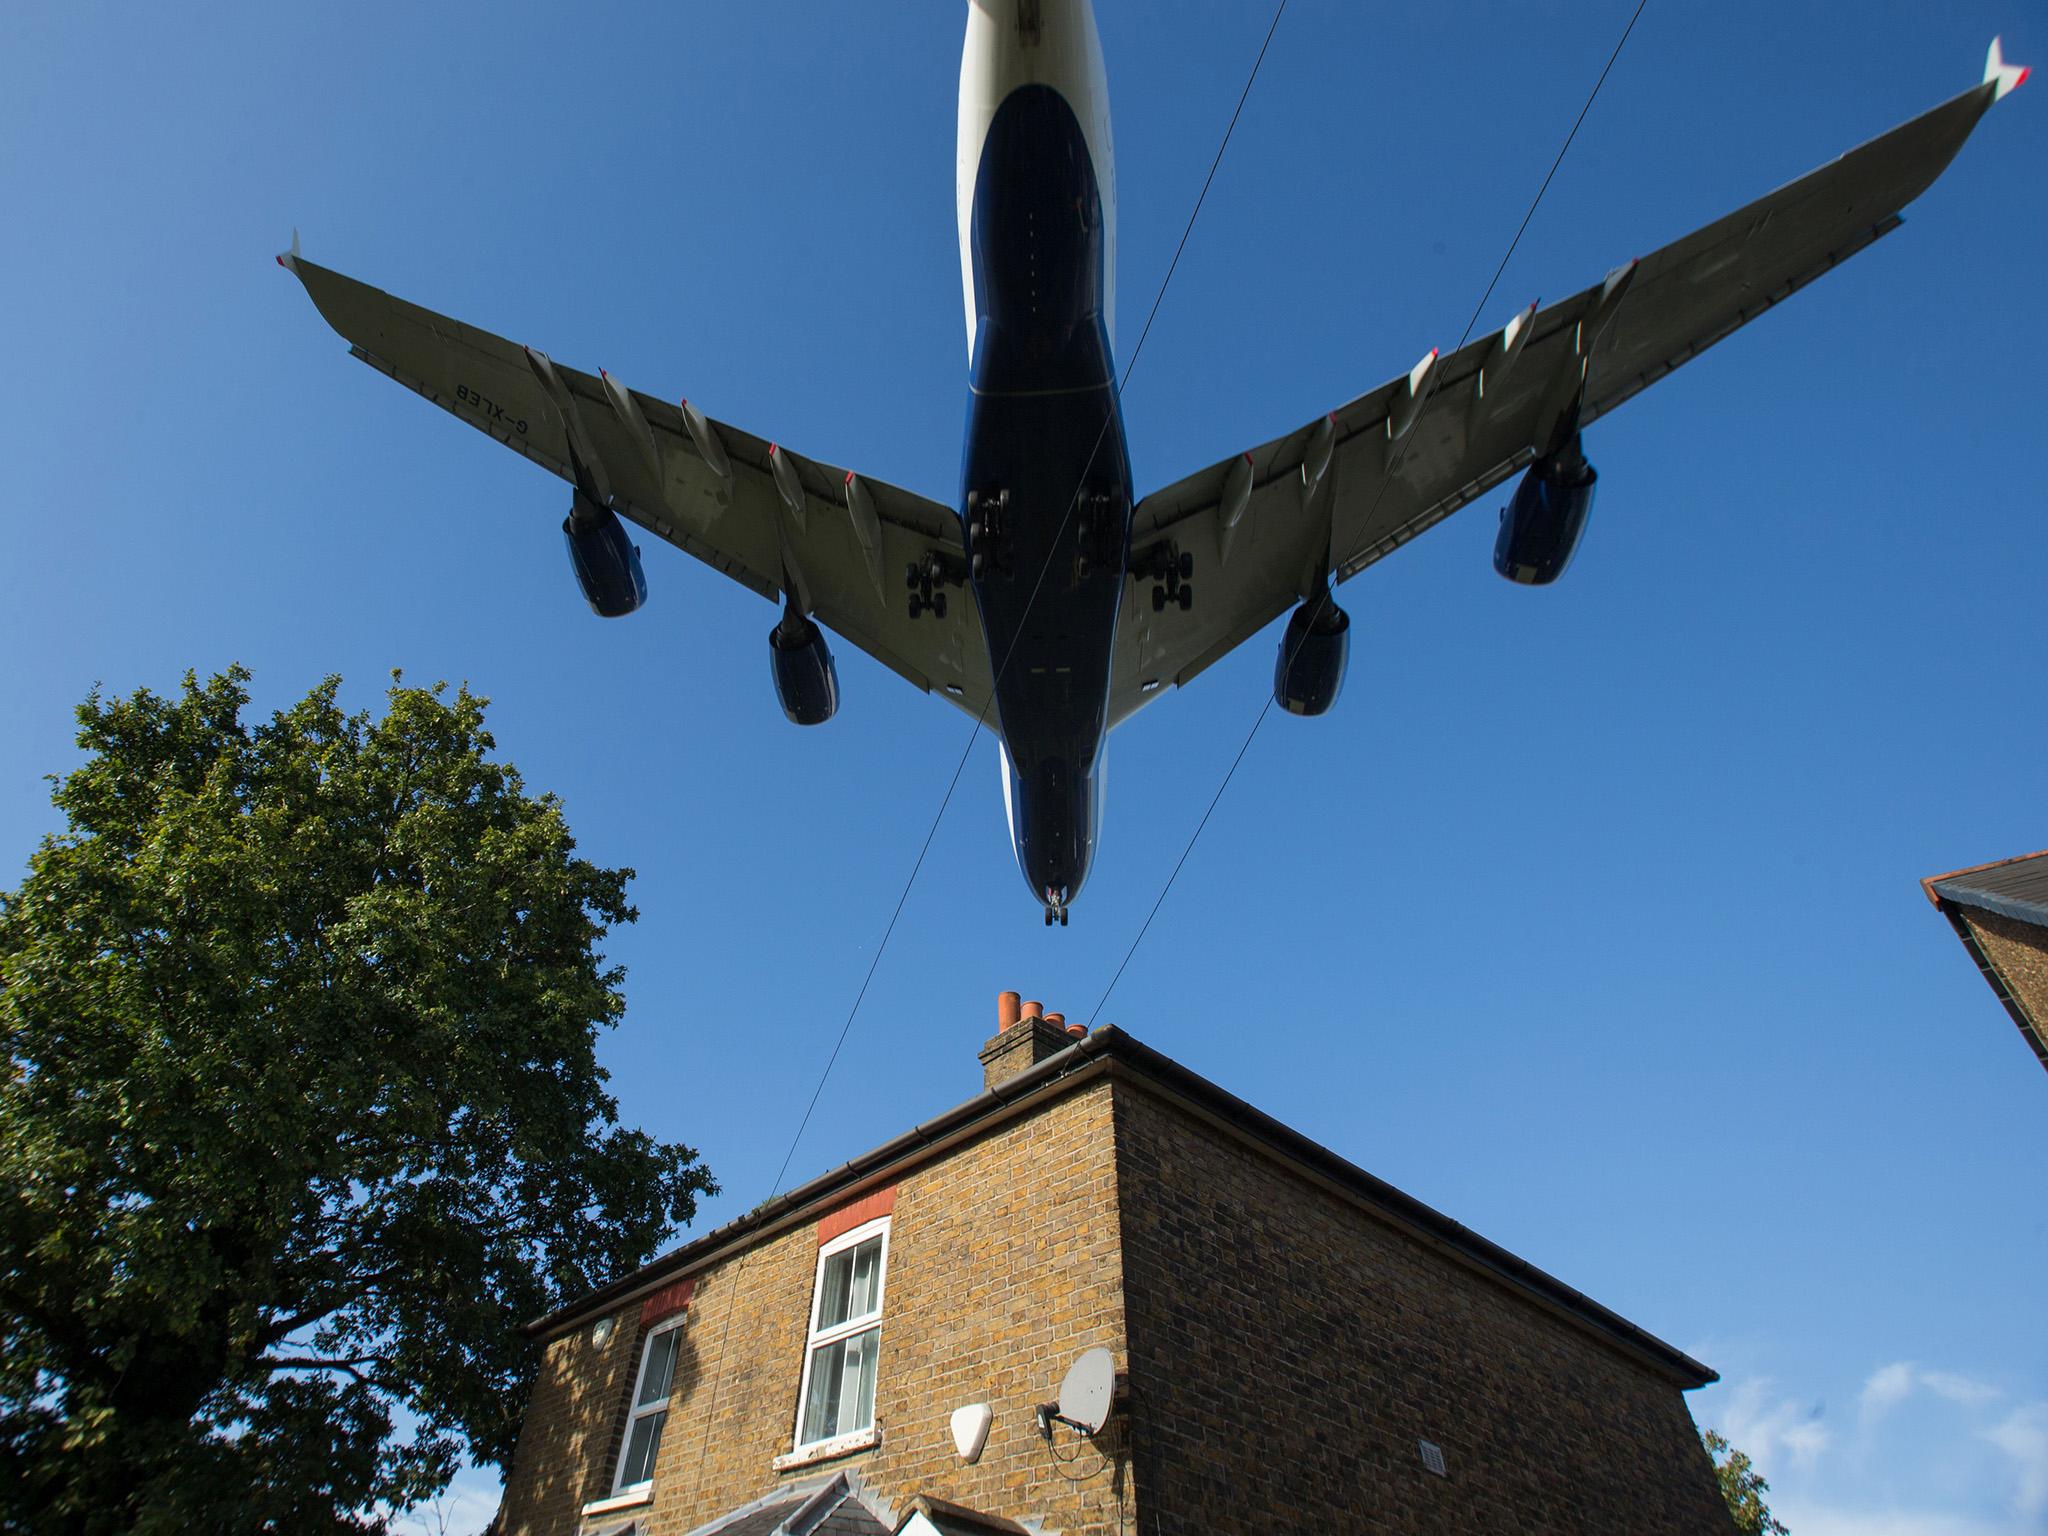 A plane flies over a house near Heathrow Airport